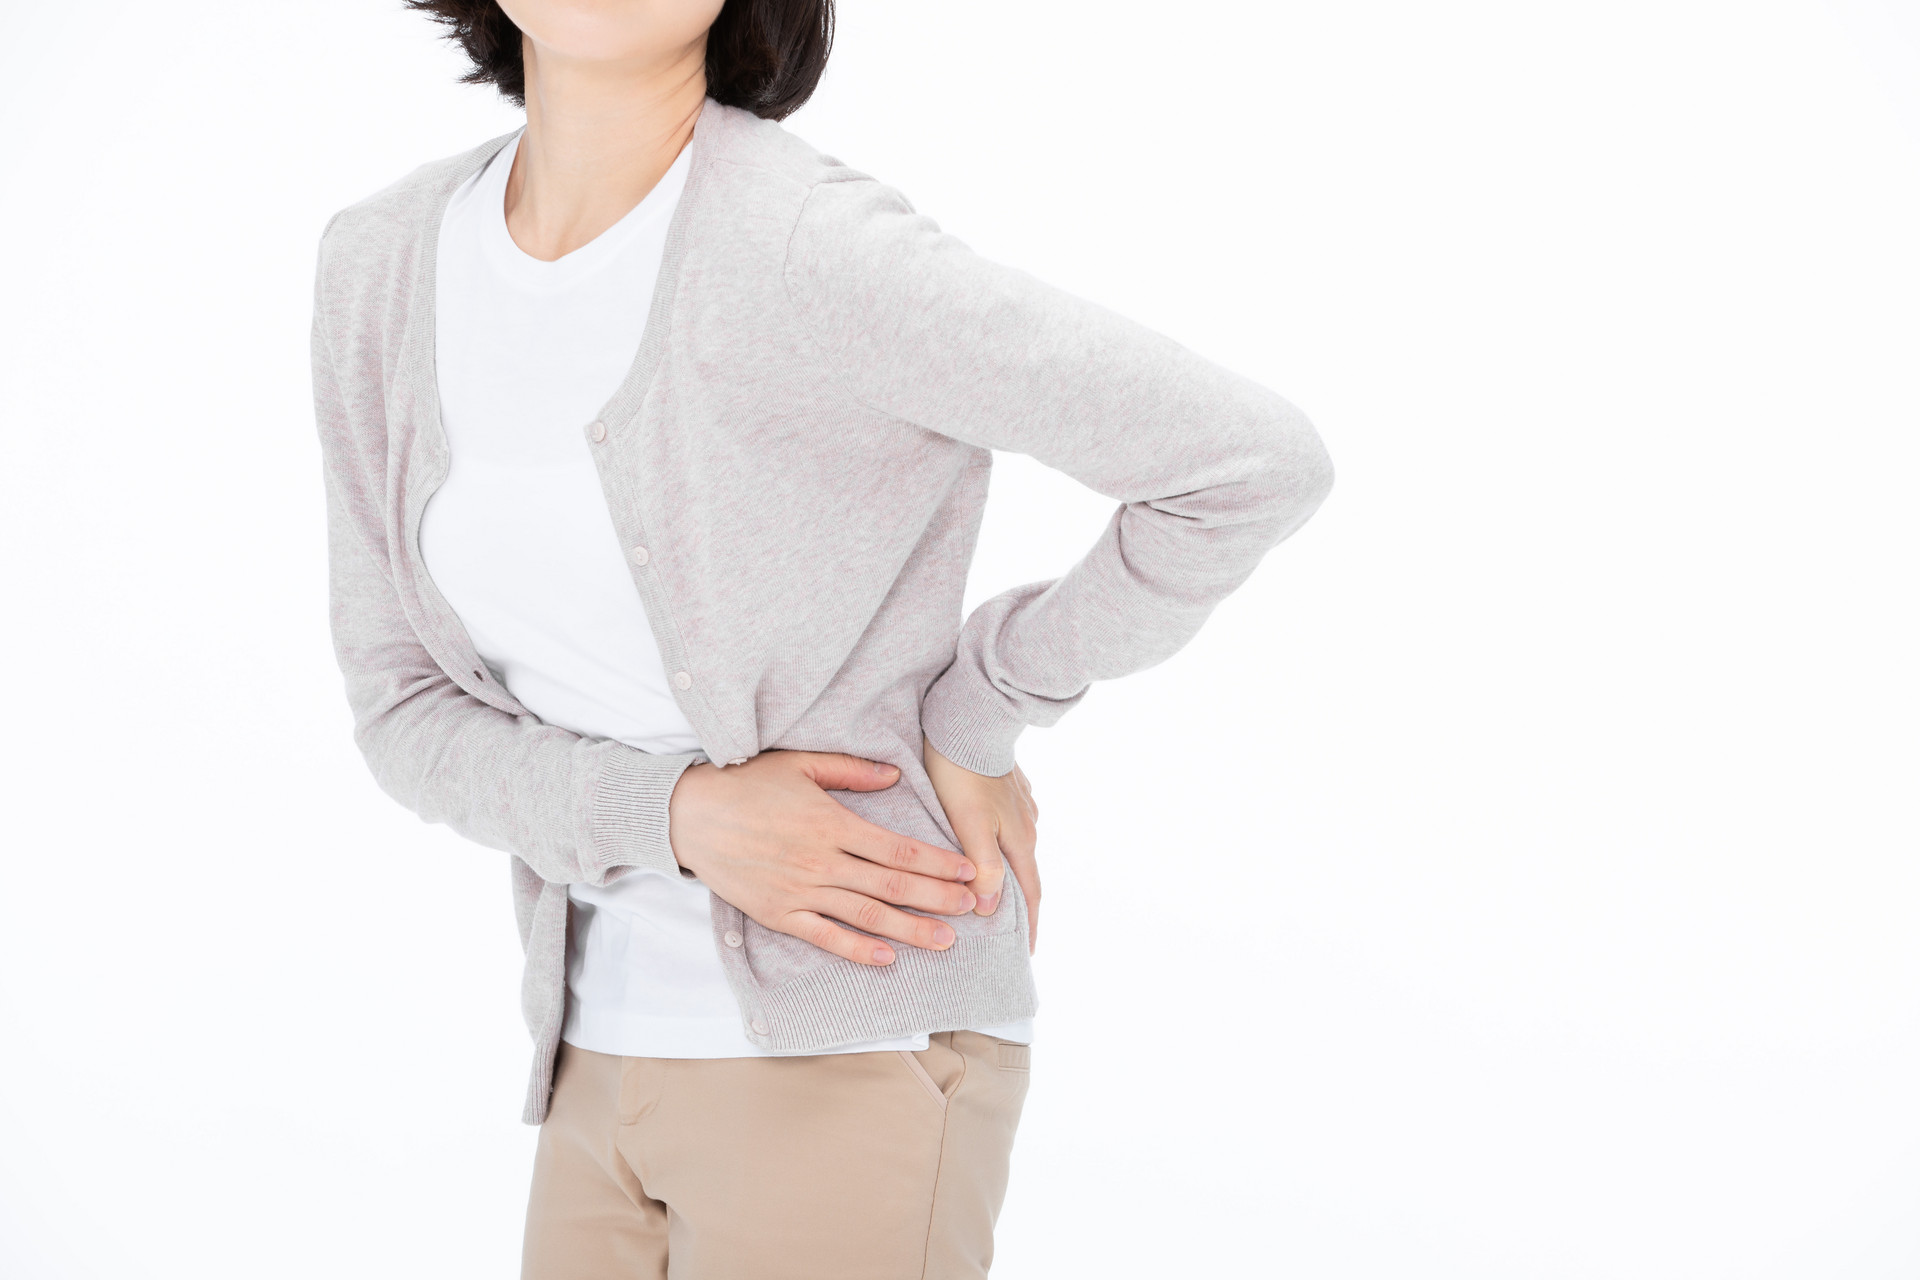 产后右侧小腹疼痛是什么原因